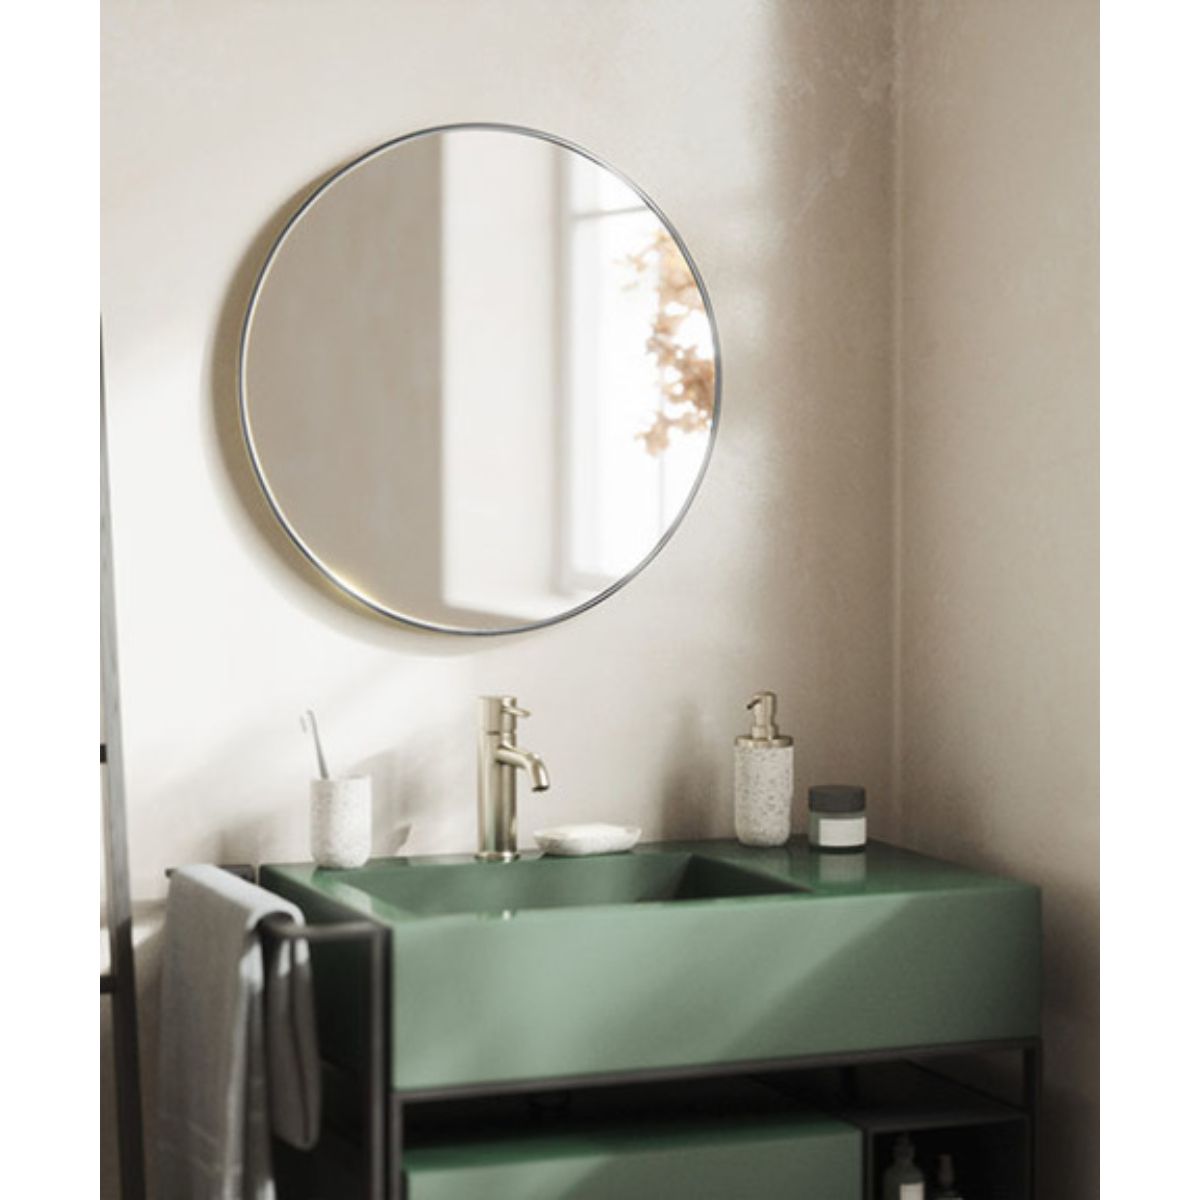 人気上昇中 株式会社アイビー 鏡の直販店洗面鏡 化粧鏡 トイレ鏡 浴室鏡 クリスタルミラーシリーズ 角丸四角形